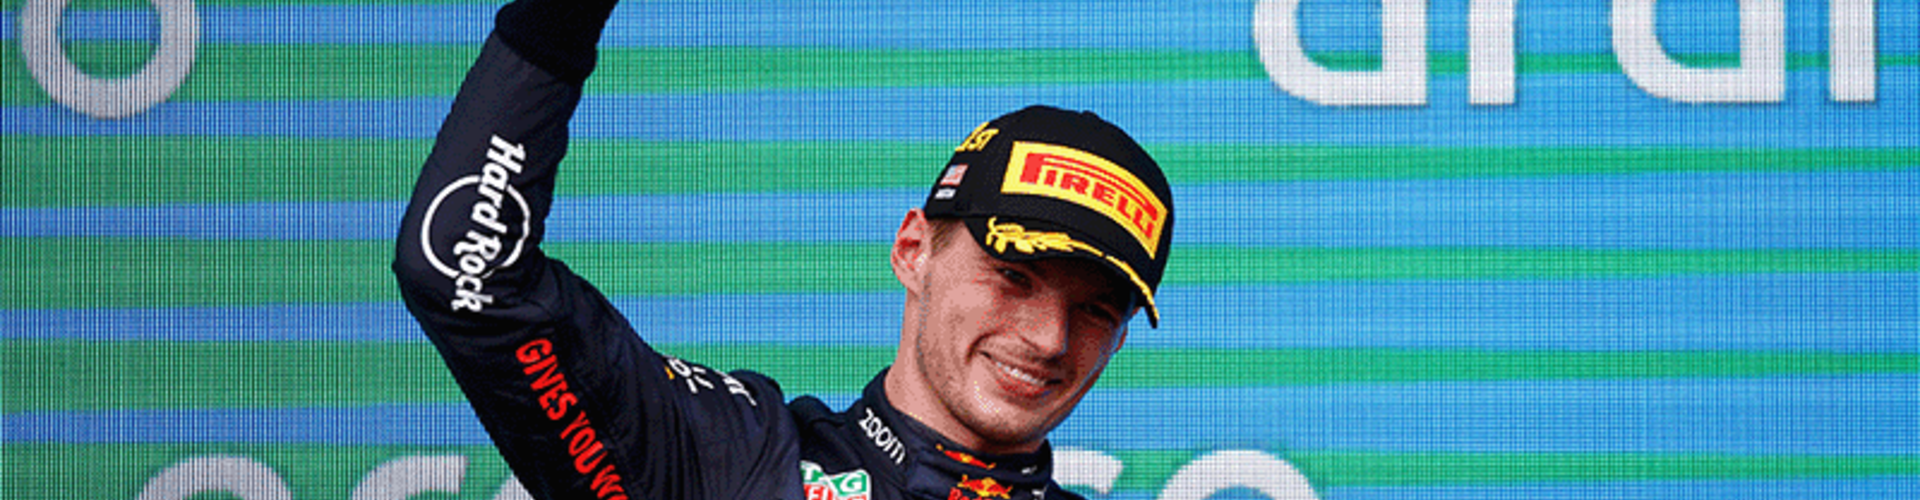 Na kampioenstitel Verstappen nu ook constructeurstitel voor Red Bull Racing